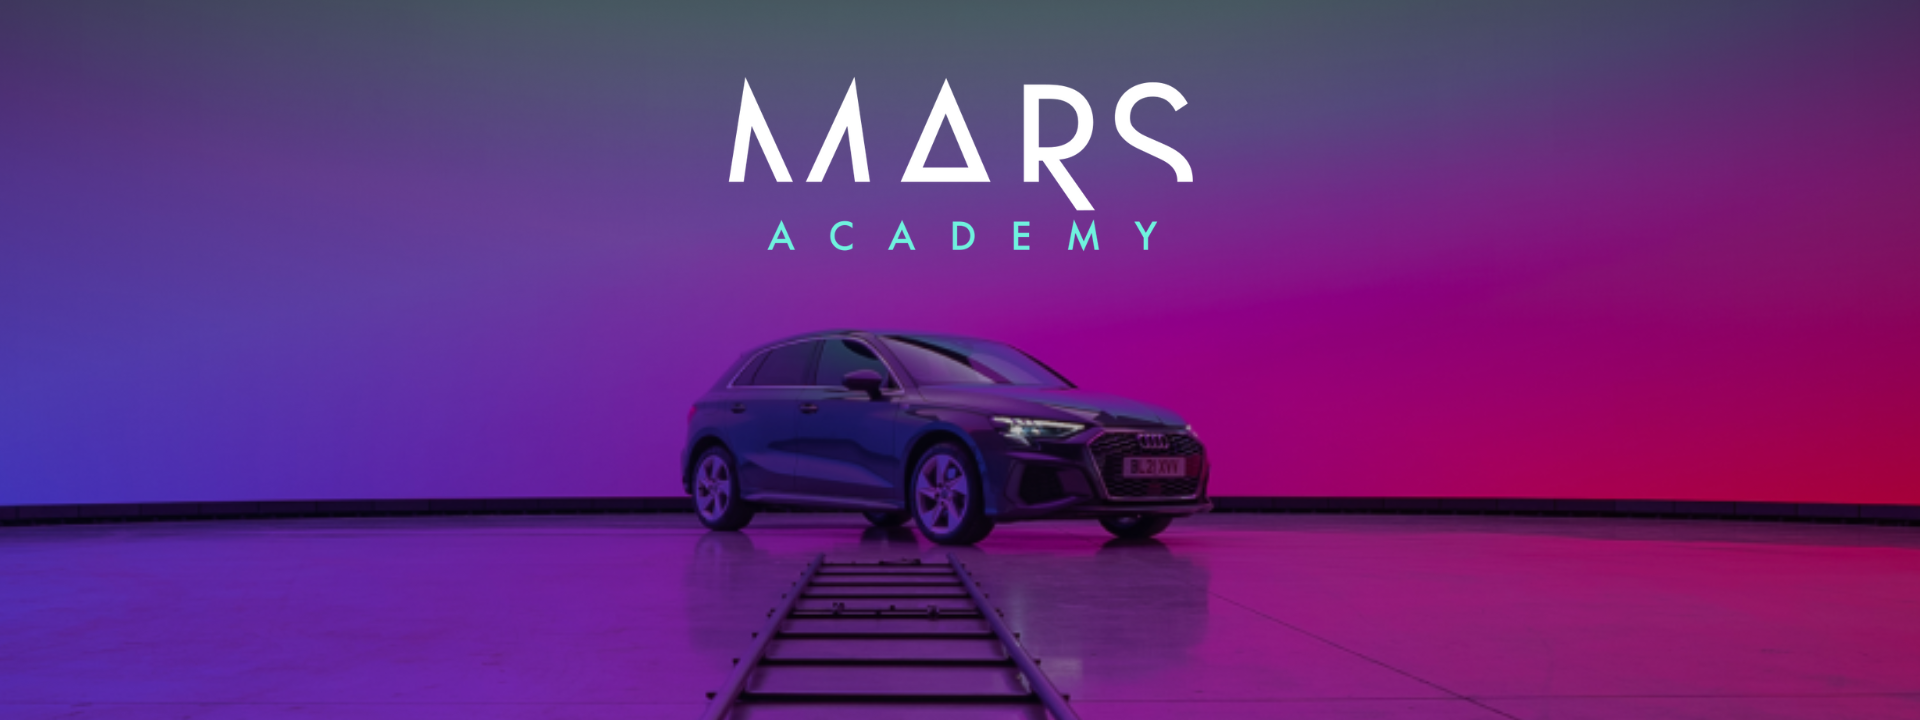 MARS Volume Academy banner